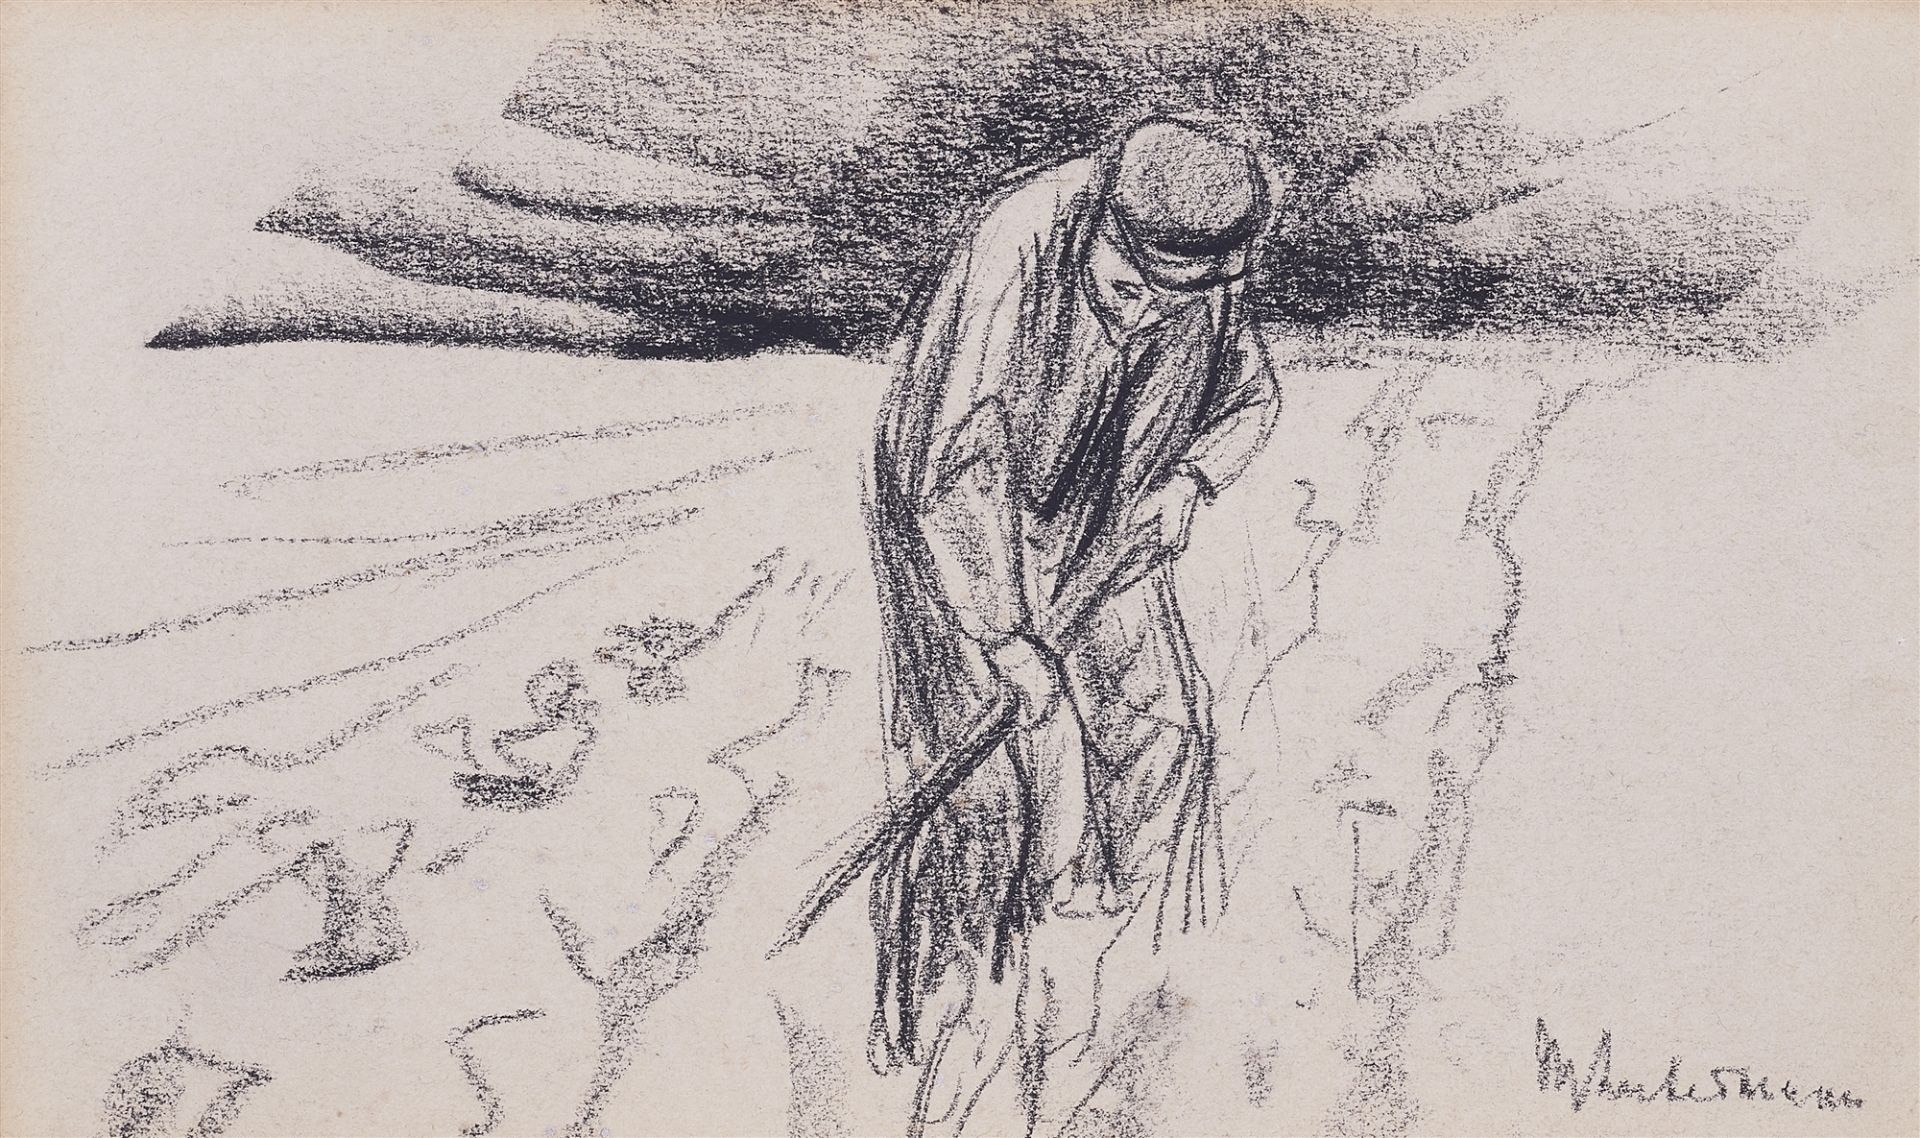 Max Liebermann, Farmer in the field